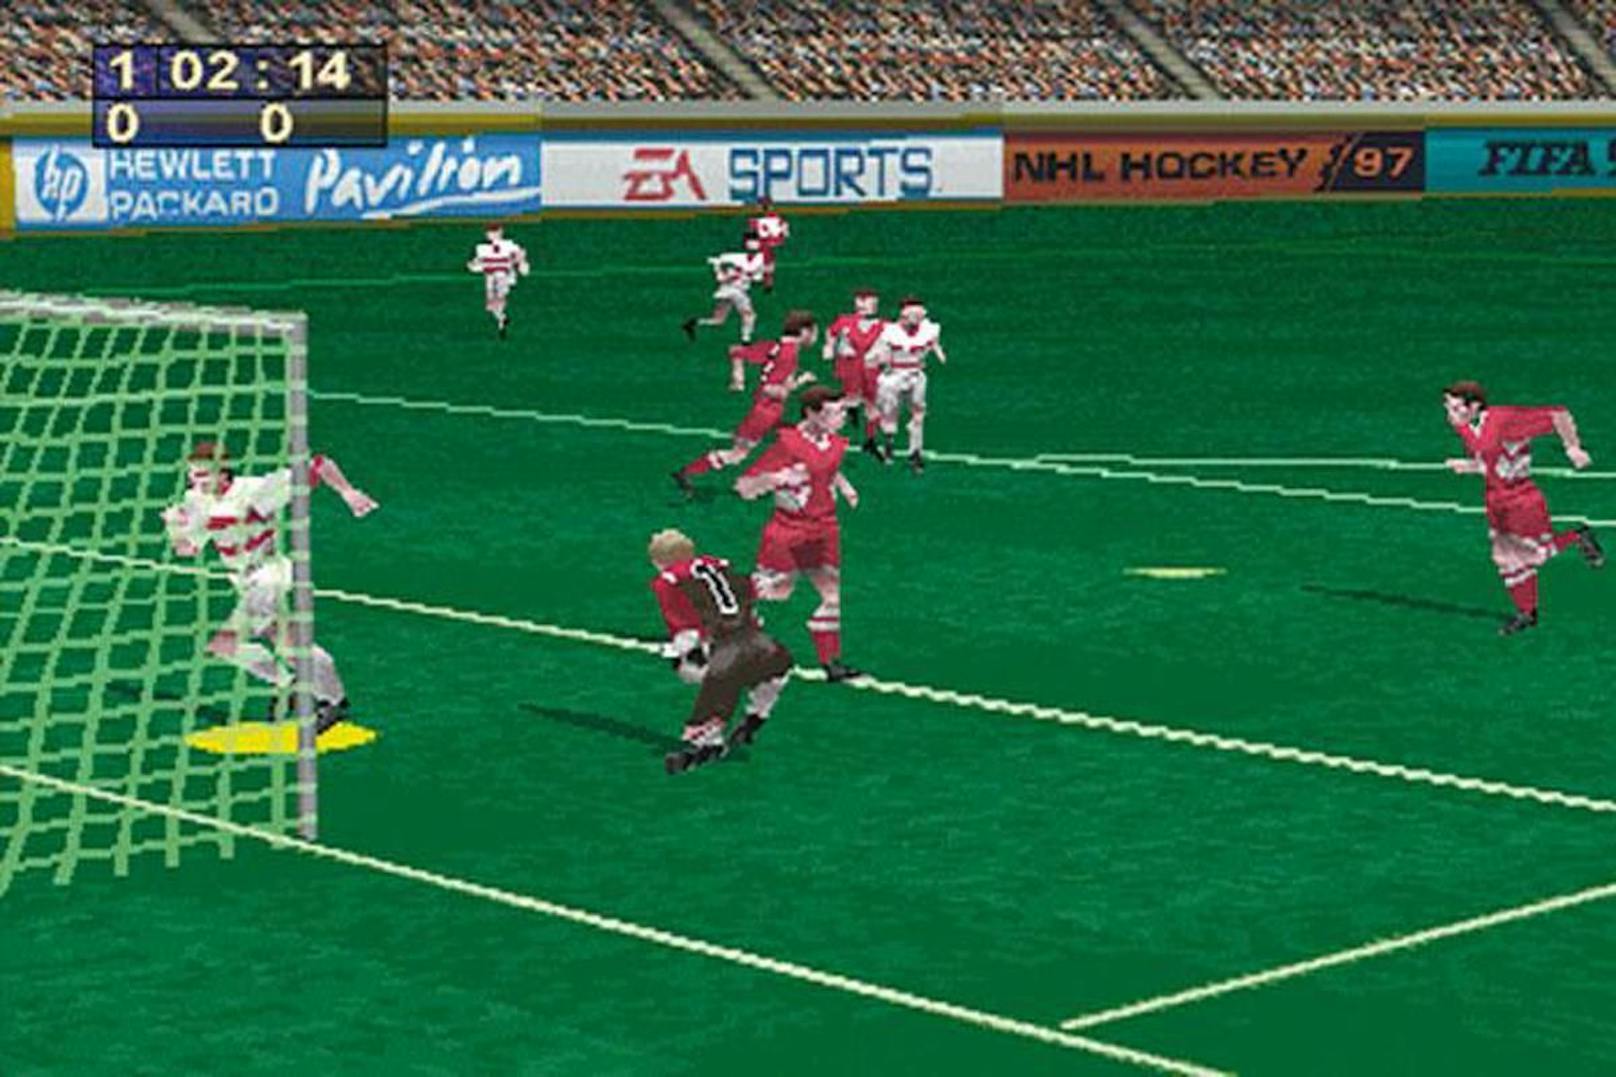 In den 90s noch mit verpixelter 3D-Grafik auf dem Sega Saturn, gehört "FIFA" heute zu den beliebtesten Spielen überhaupt. Alleine neun Millionen Spieler und Spielerinnen haben sich bis jetzt die neue Version gekauft.